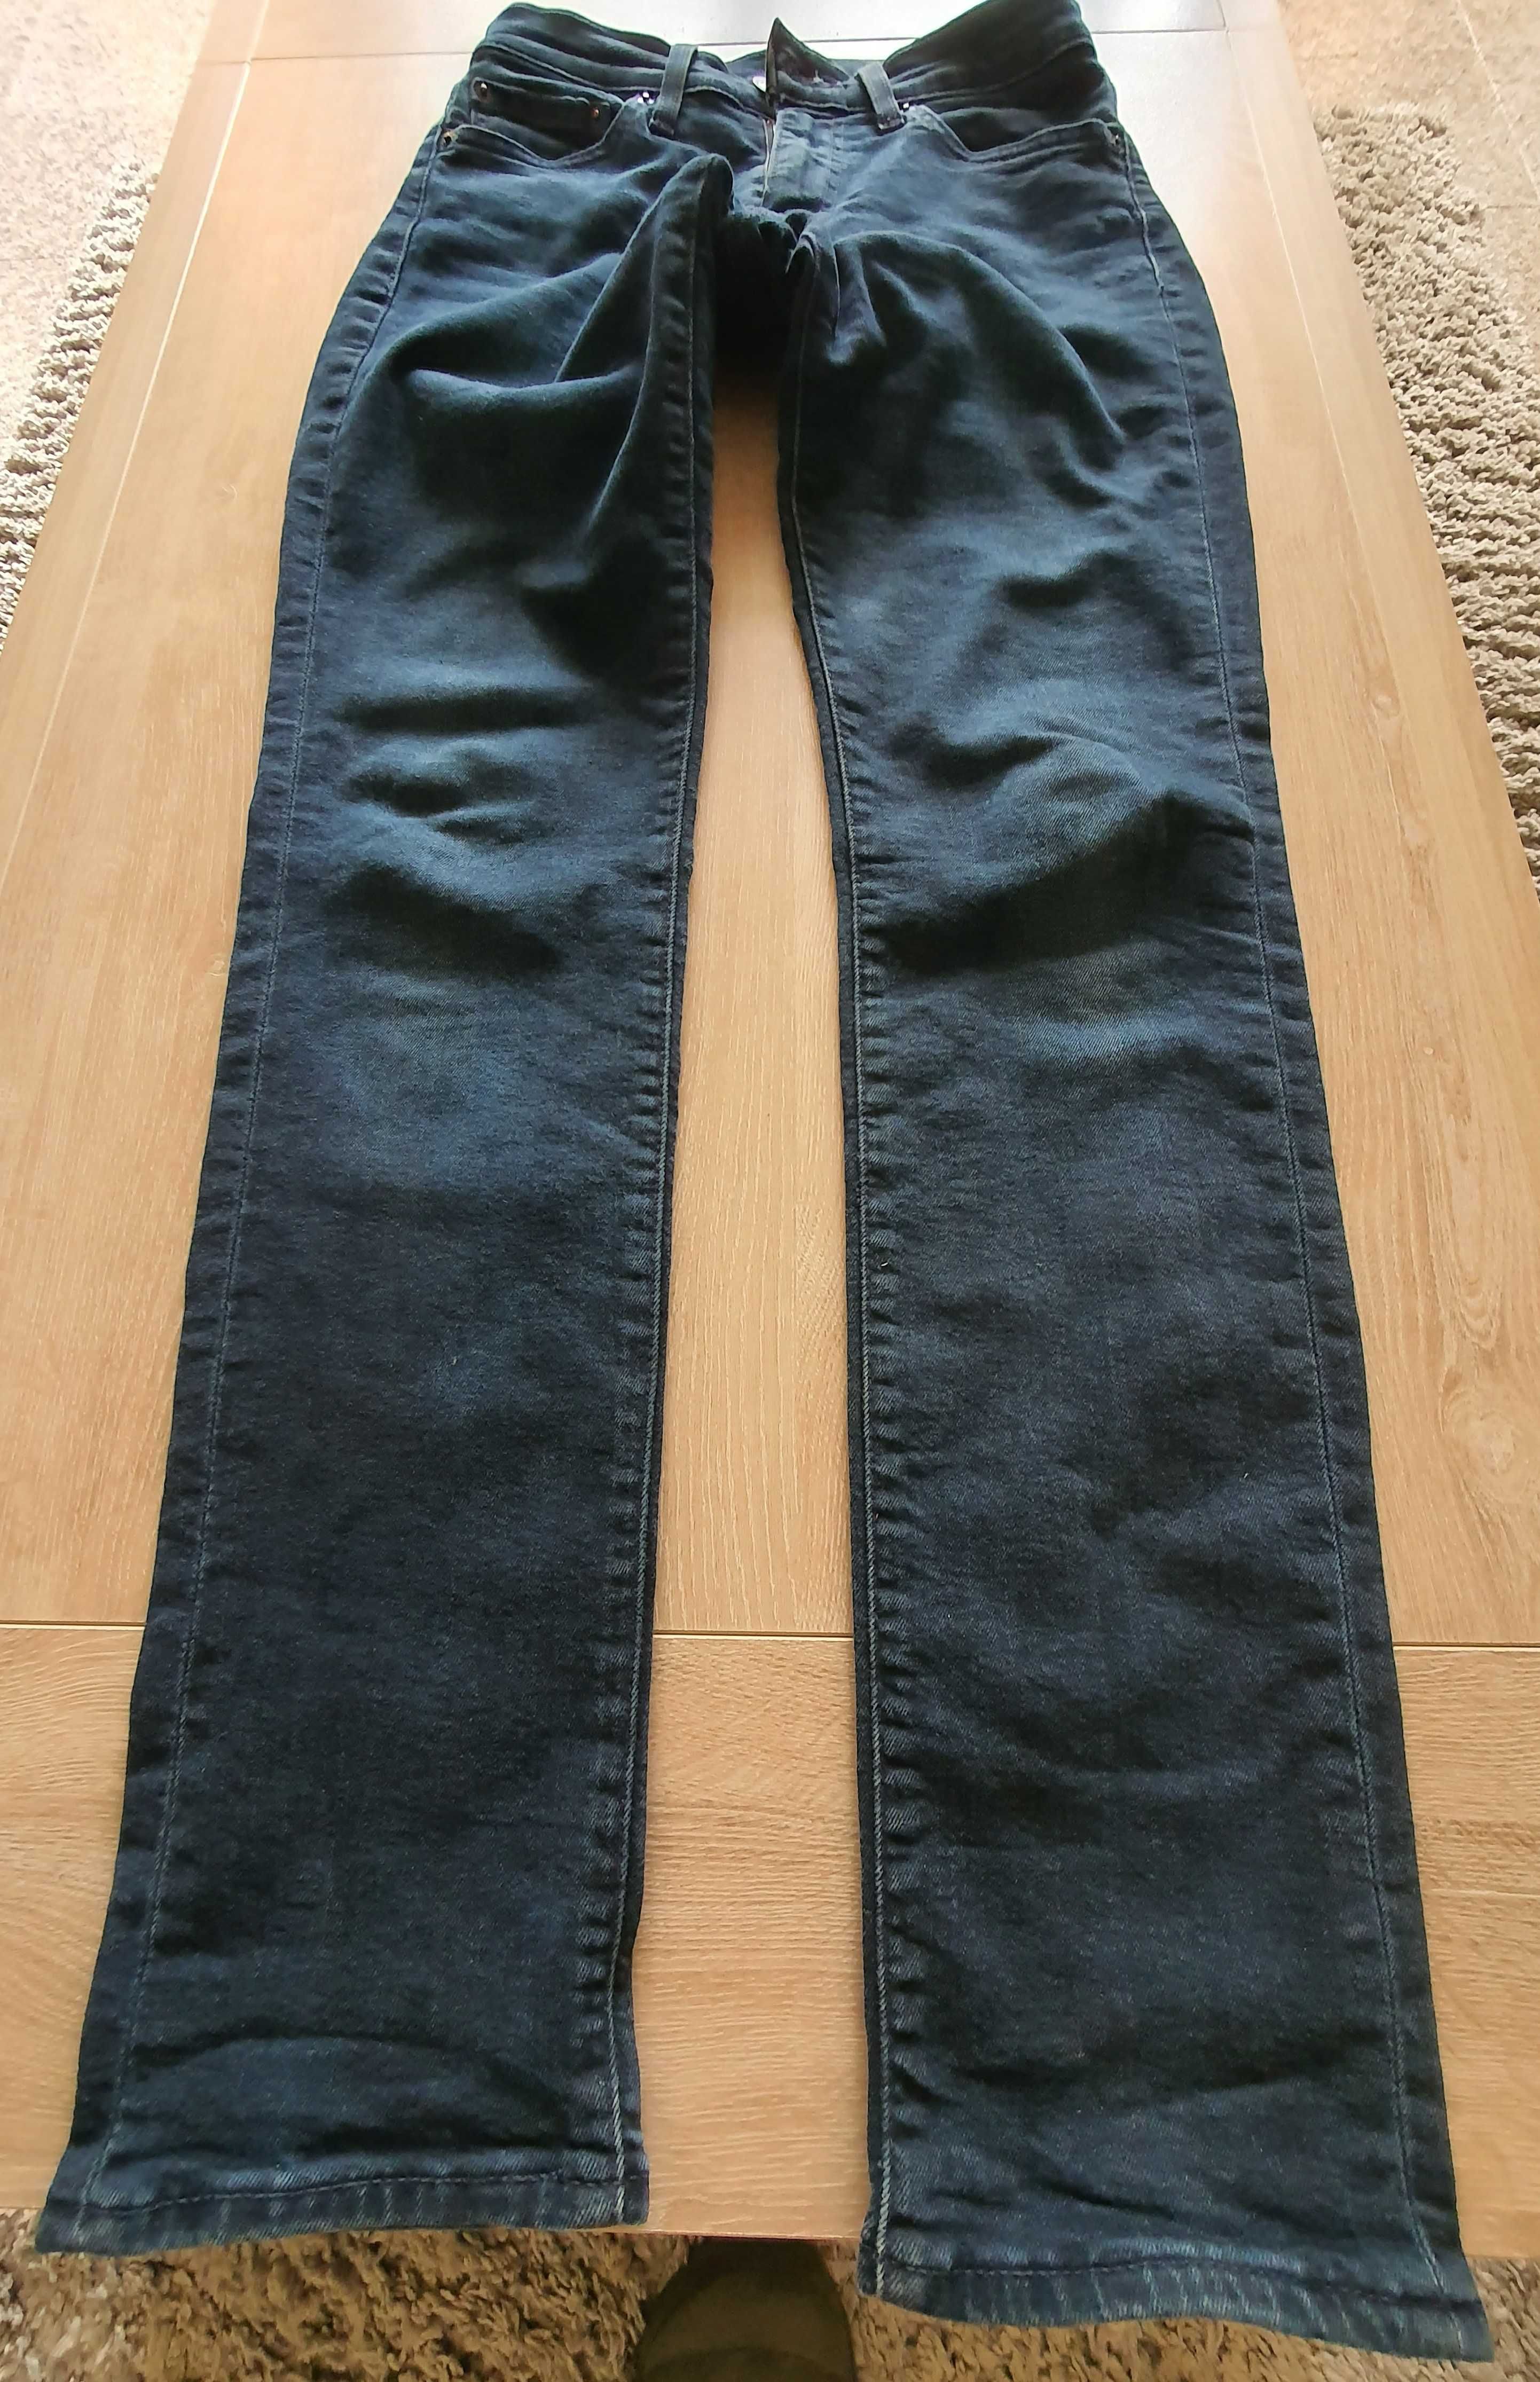 Jeans Levi's 511 - Novos s/ Etiqueta (Originais) - Aproveite o preço